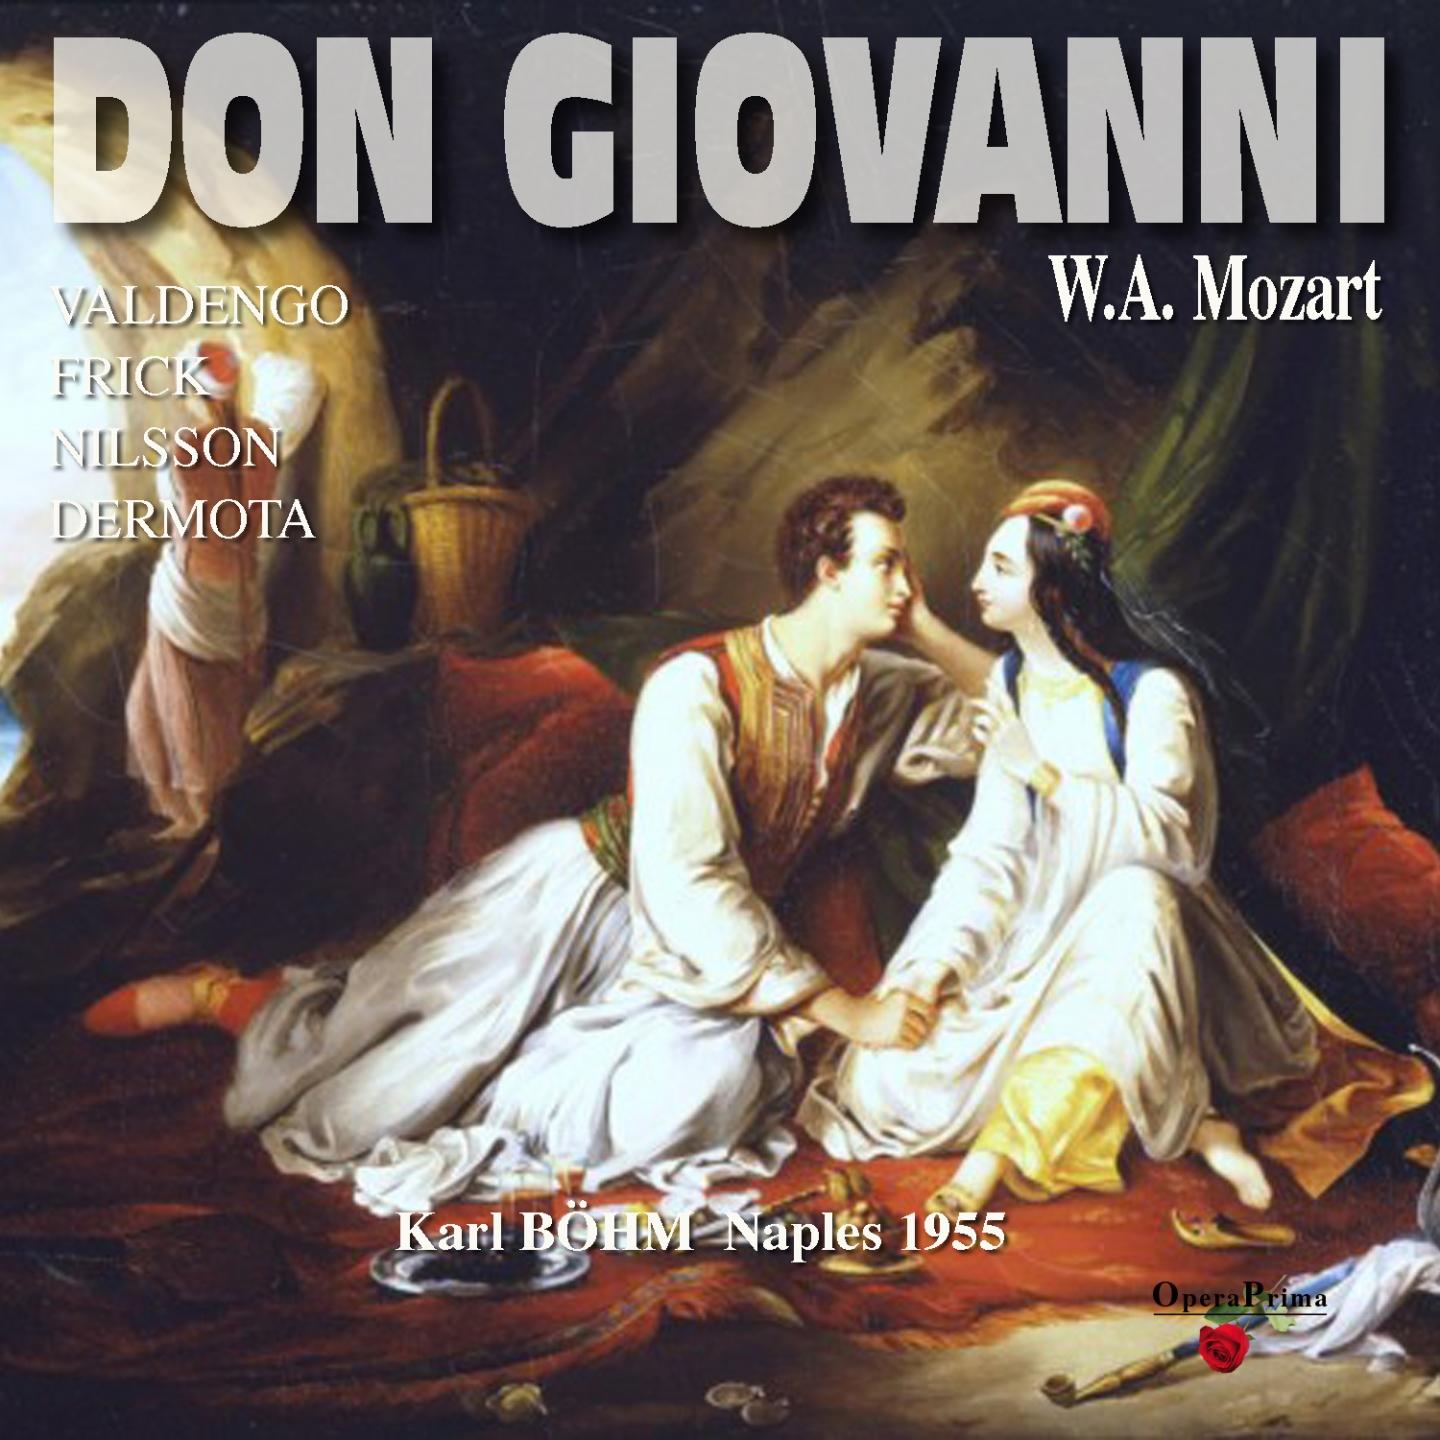 Don Giovanni: Act I - "Ah, chi mi dice mai"